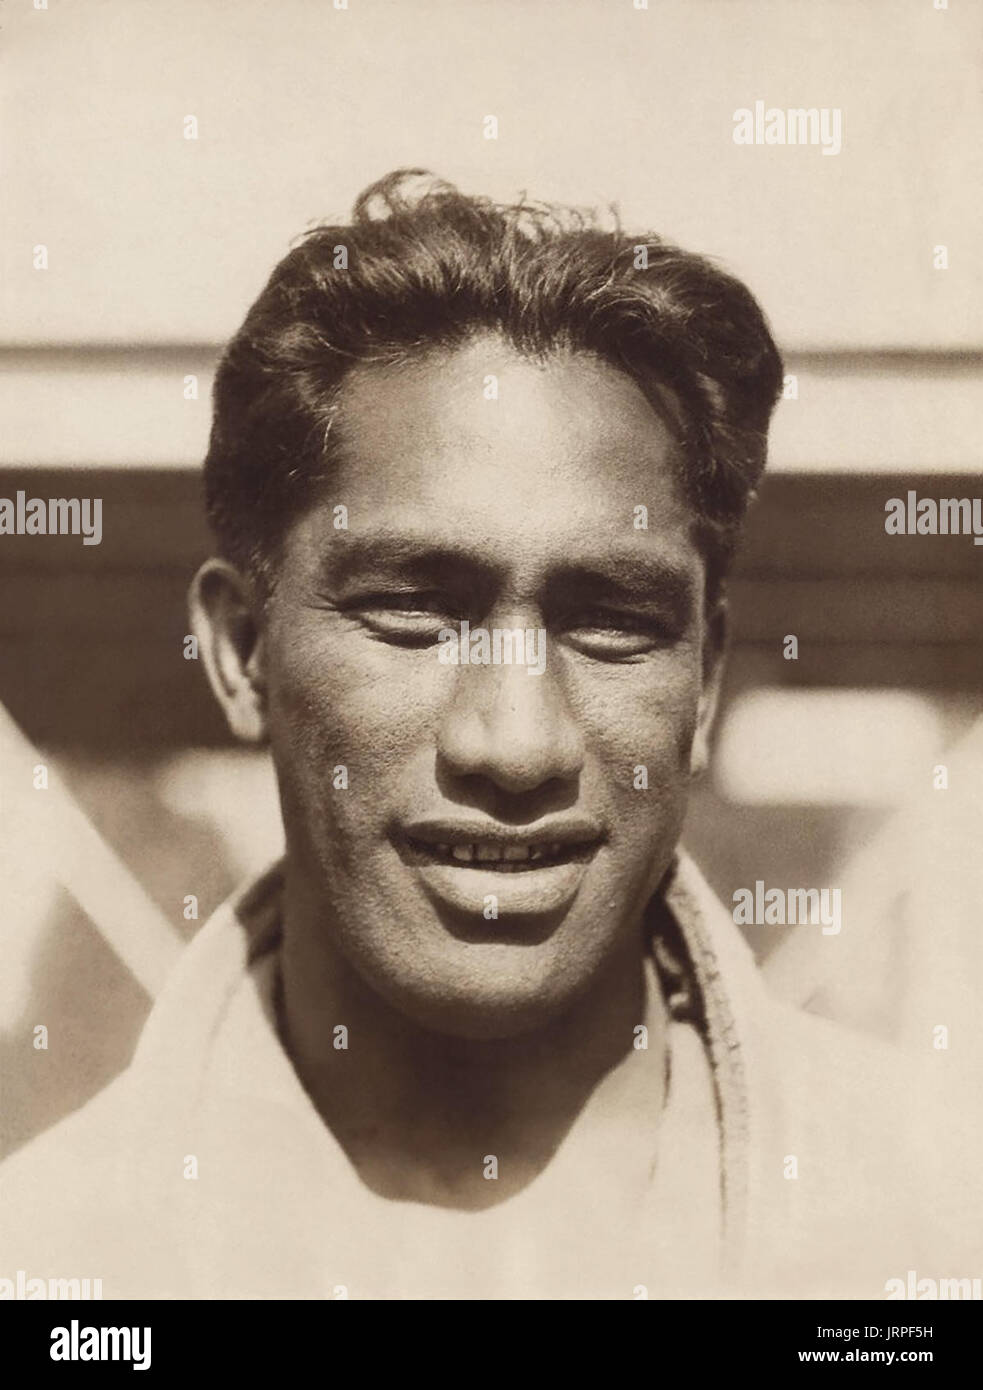 Duke Paoa Kahanamoku (1890-1968), souvent appelée simplement "Le Duc", était un lengendary surfeur hawaïen indigène considéré comme le père de la surf. Il a également cinq fois médaillée olympique en natation qui ont participé aux 1912, 1920 et 1924 Jeux Olympiques d'été, en plus d'être un autre pour les États-Unis à l'équipe de water-polo aux Jeux Olympiques de 1932. Kahanamoku est inclus dans le Swimming Hall of Fame, le surfing Hall of Fame, et le Temple de la renommée olympique des États-Unis. (Photographié ici c1924) Banque D'Images